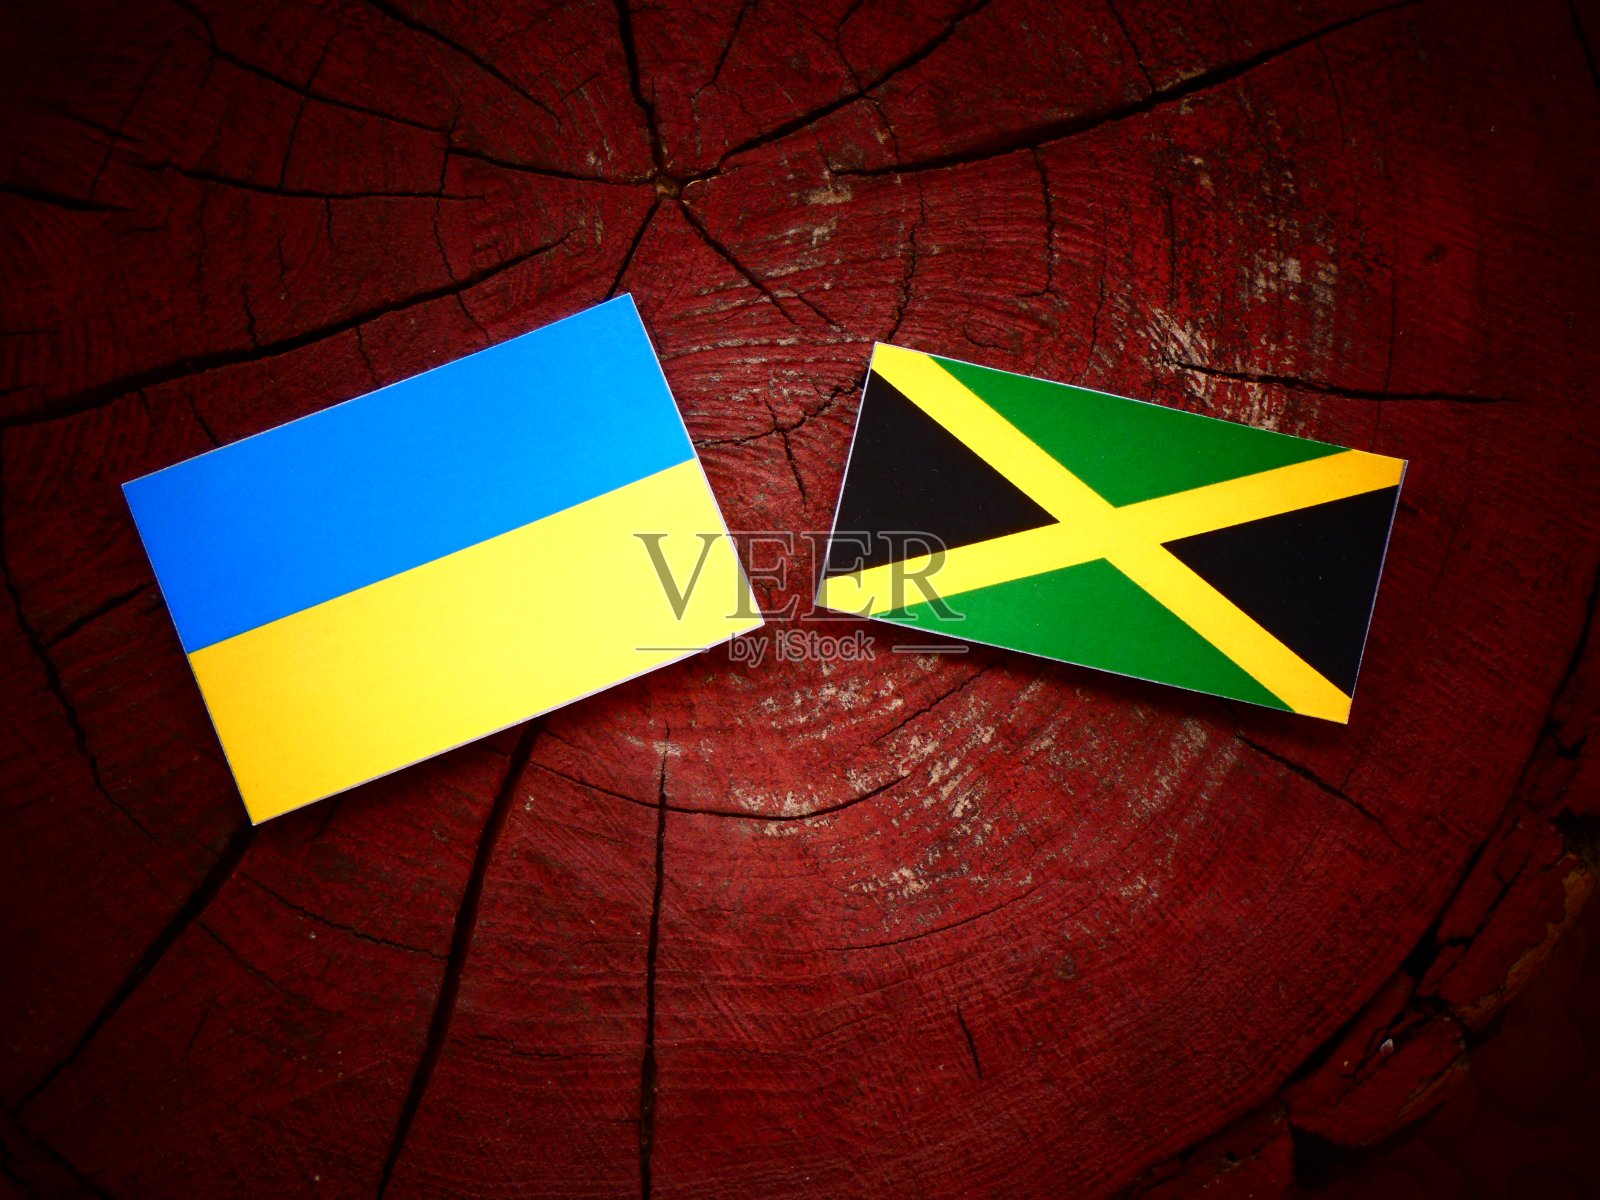 孤立的树桩上悬挂着乌克兰国旗和牙买加国旗照片摄影图片